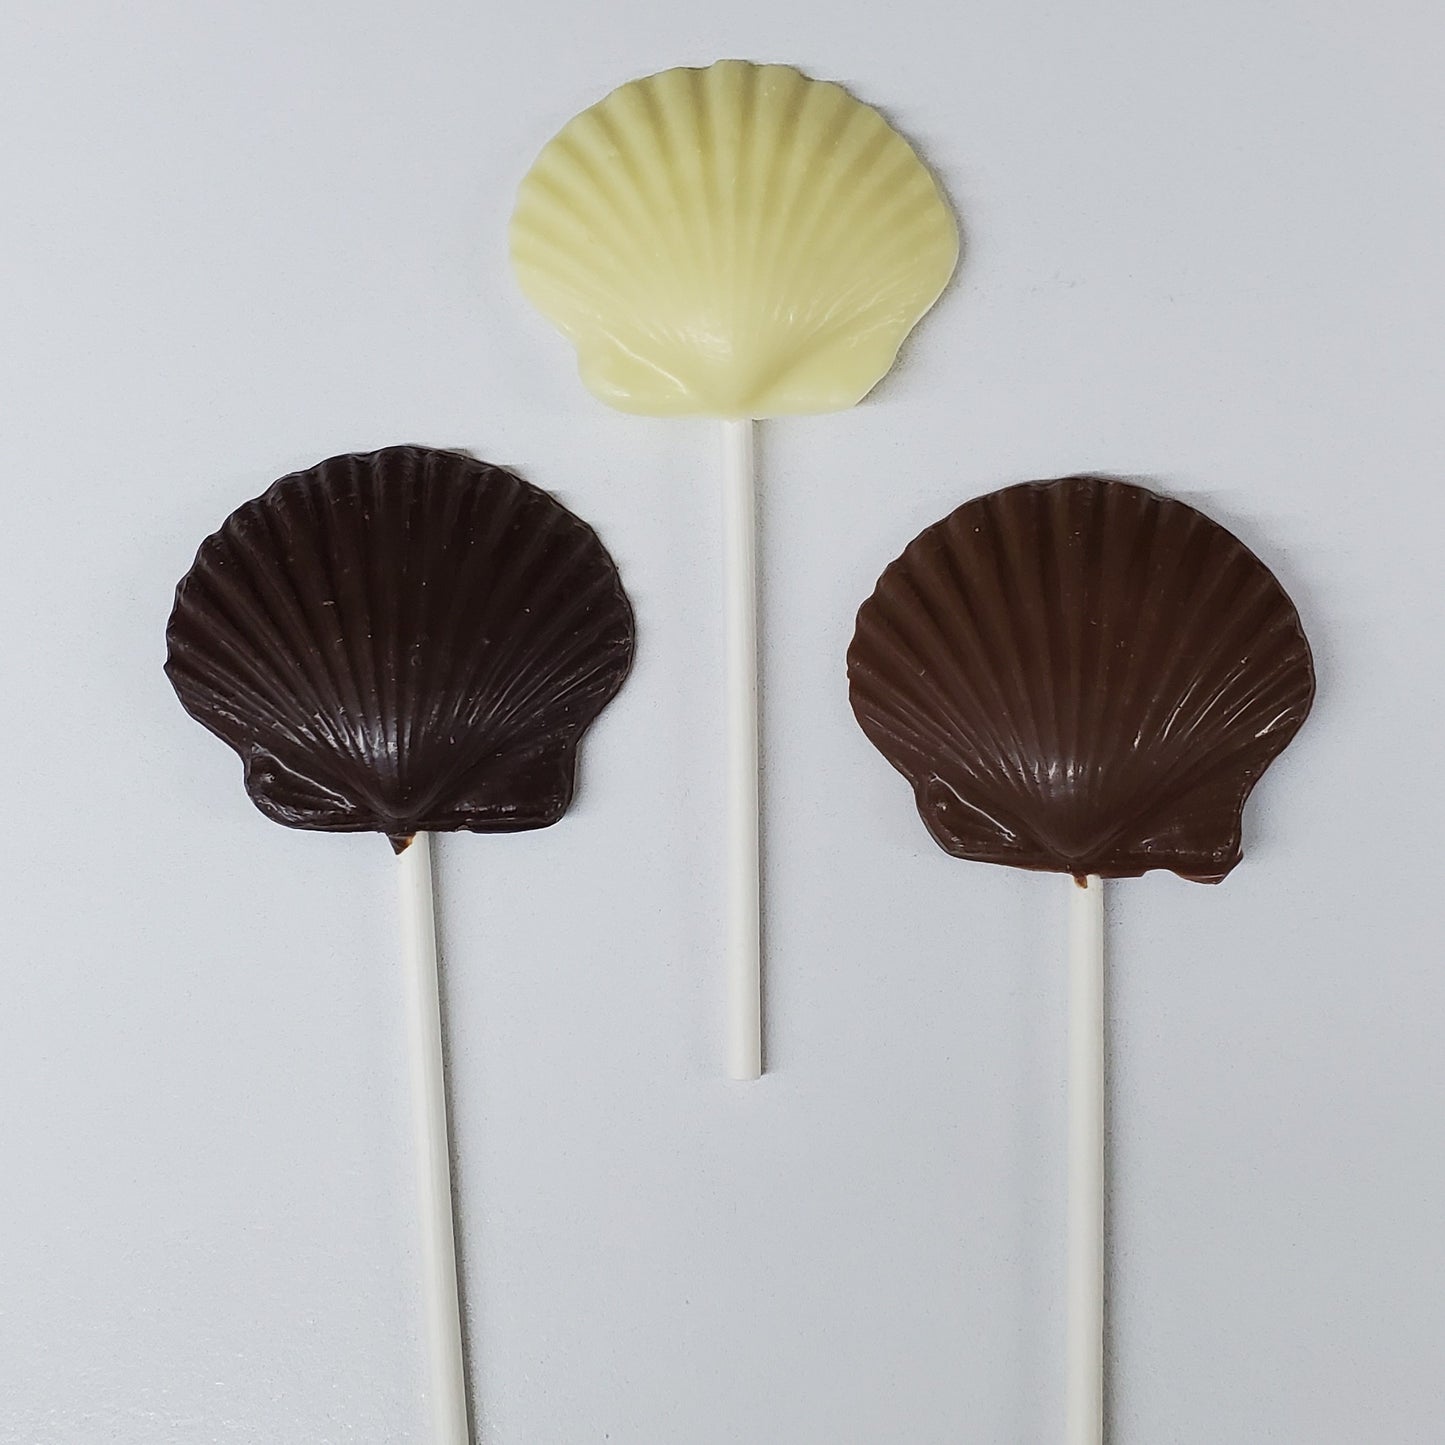 Dark Chocolate, White Chocolate & Milk Chocolate Shaped Shell Pops